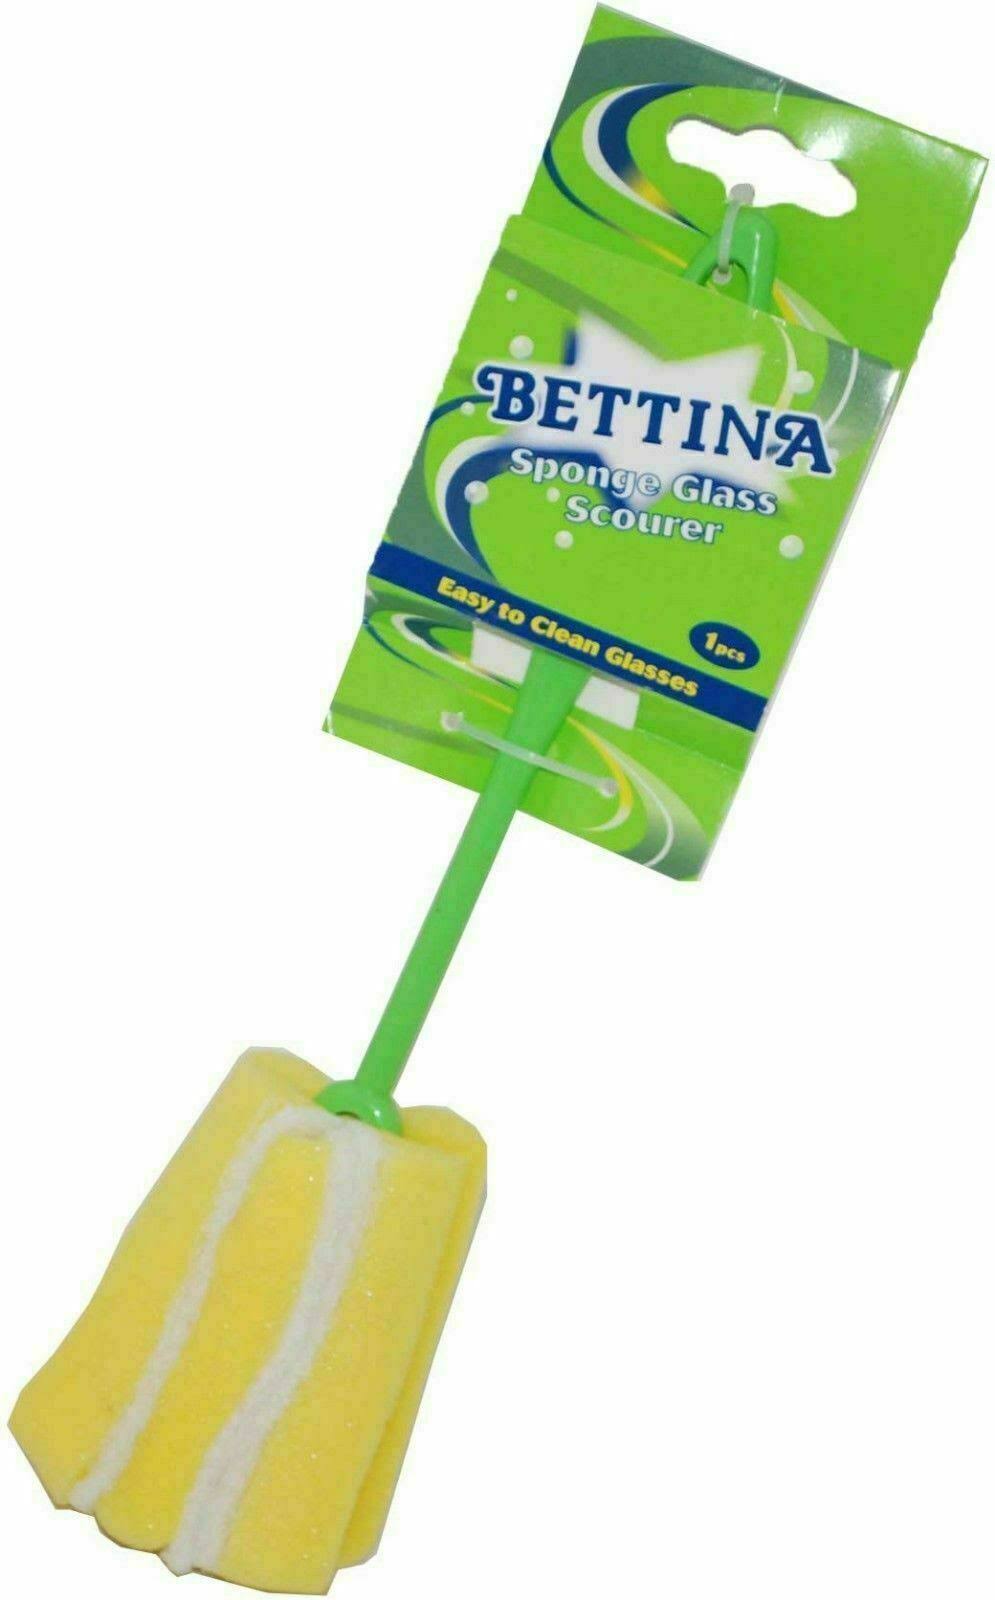 Bettina Bottle/Glass Scourer Sponge Cleaner Easy to Clean Glasses